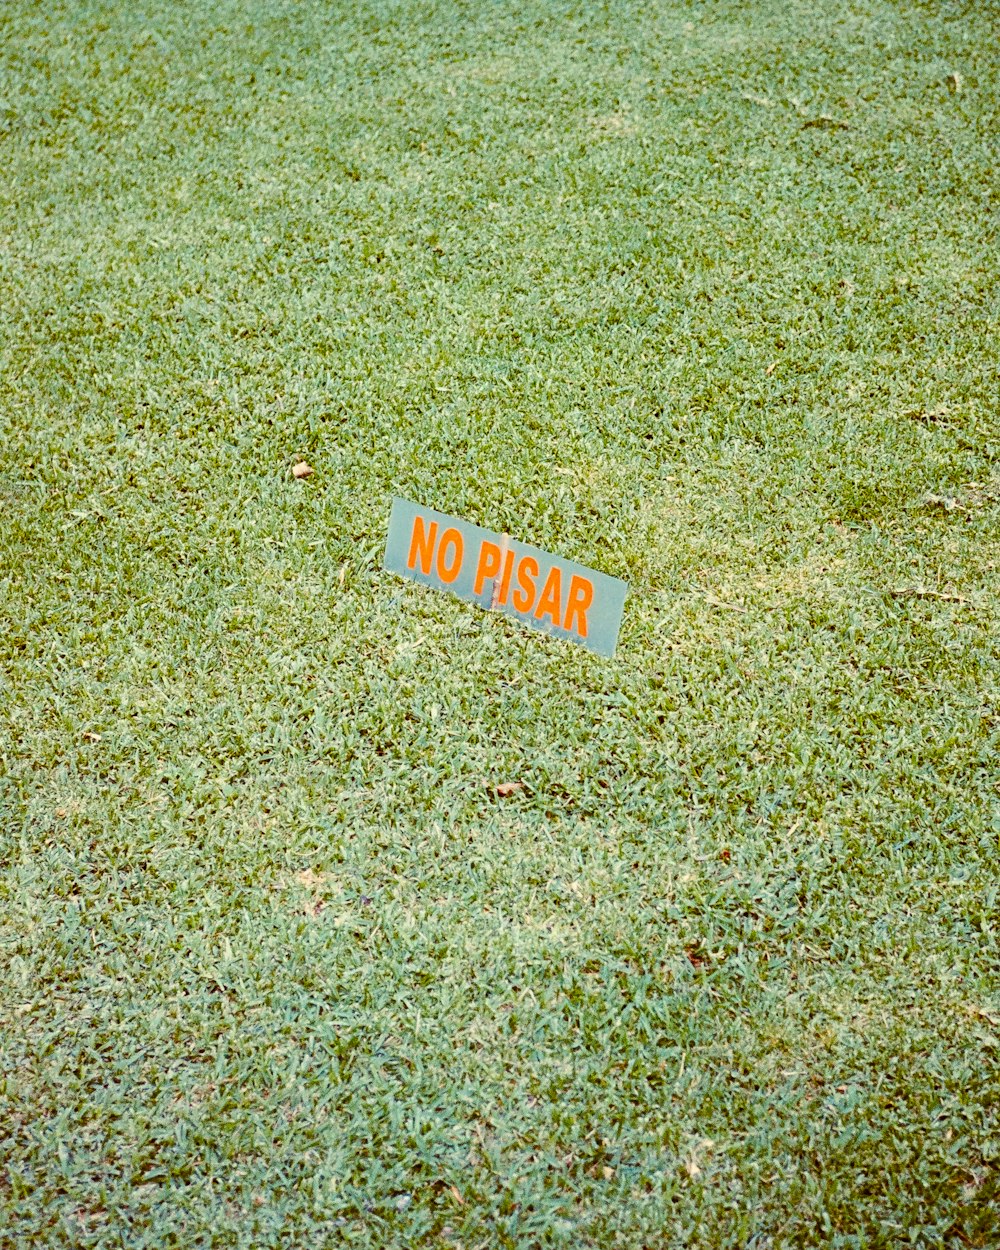 ein Schild, das im Gras sitzt